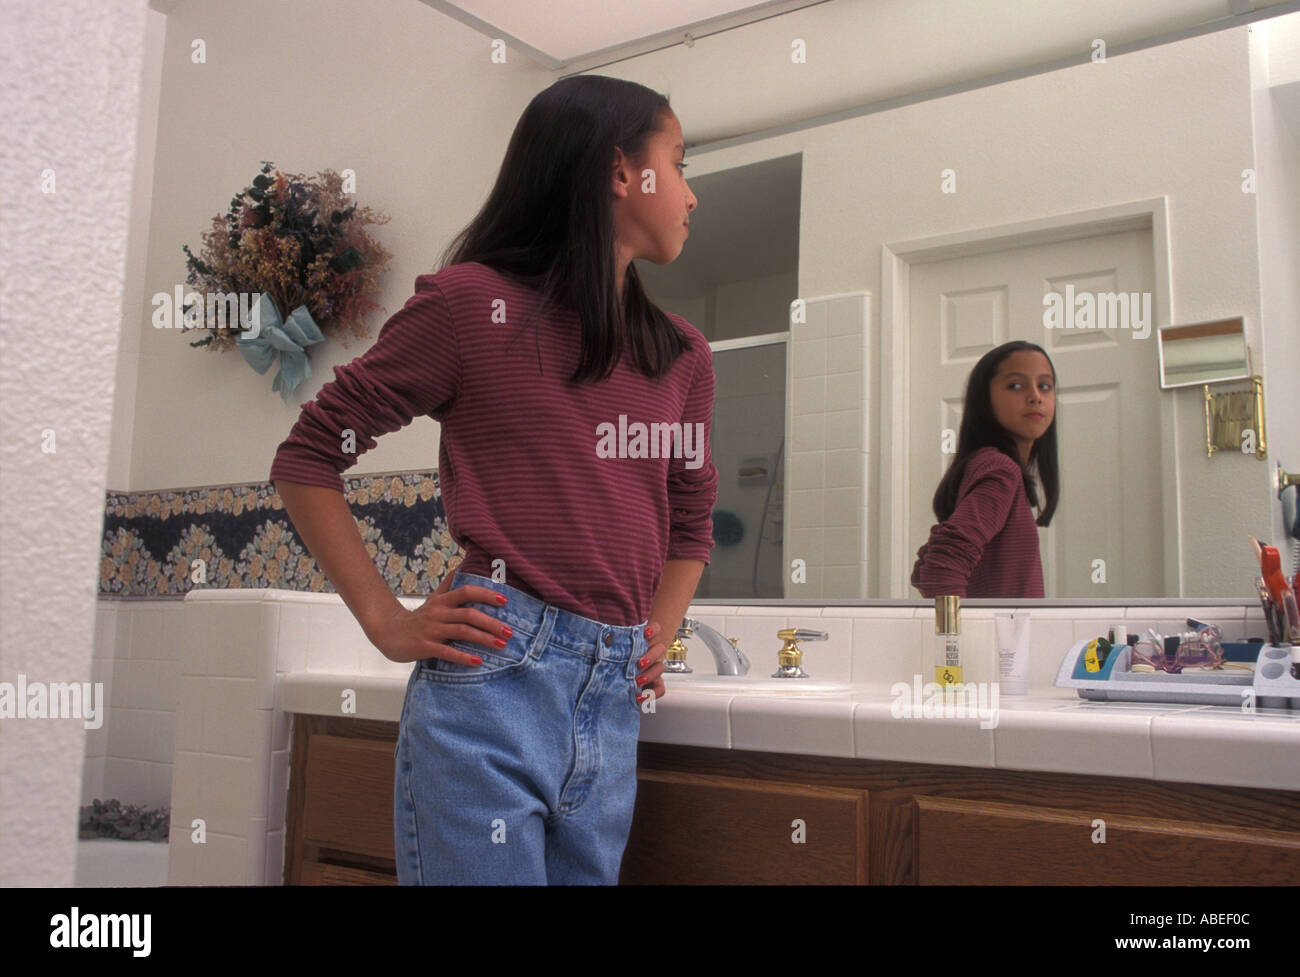 Le Tween préadolescents 11-13 ans admiring Herself miroir reflet enfant Les enfants de divers groupes raciaux mixtes de l'ethnicité. gens personne POV Banque D'Images